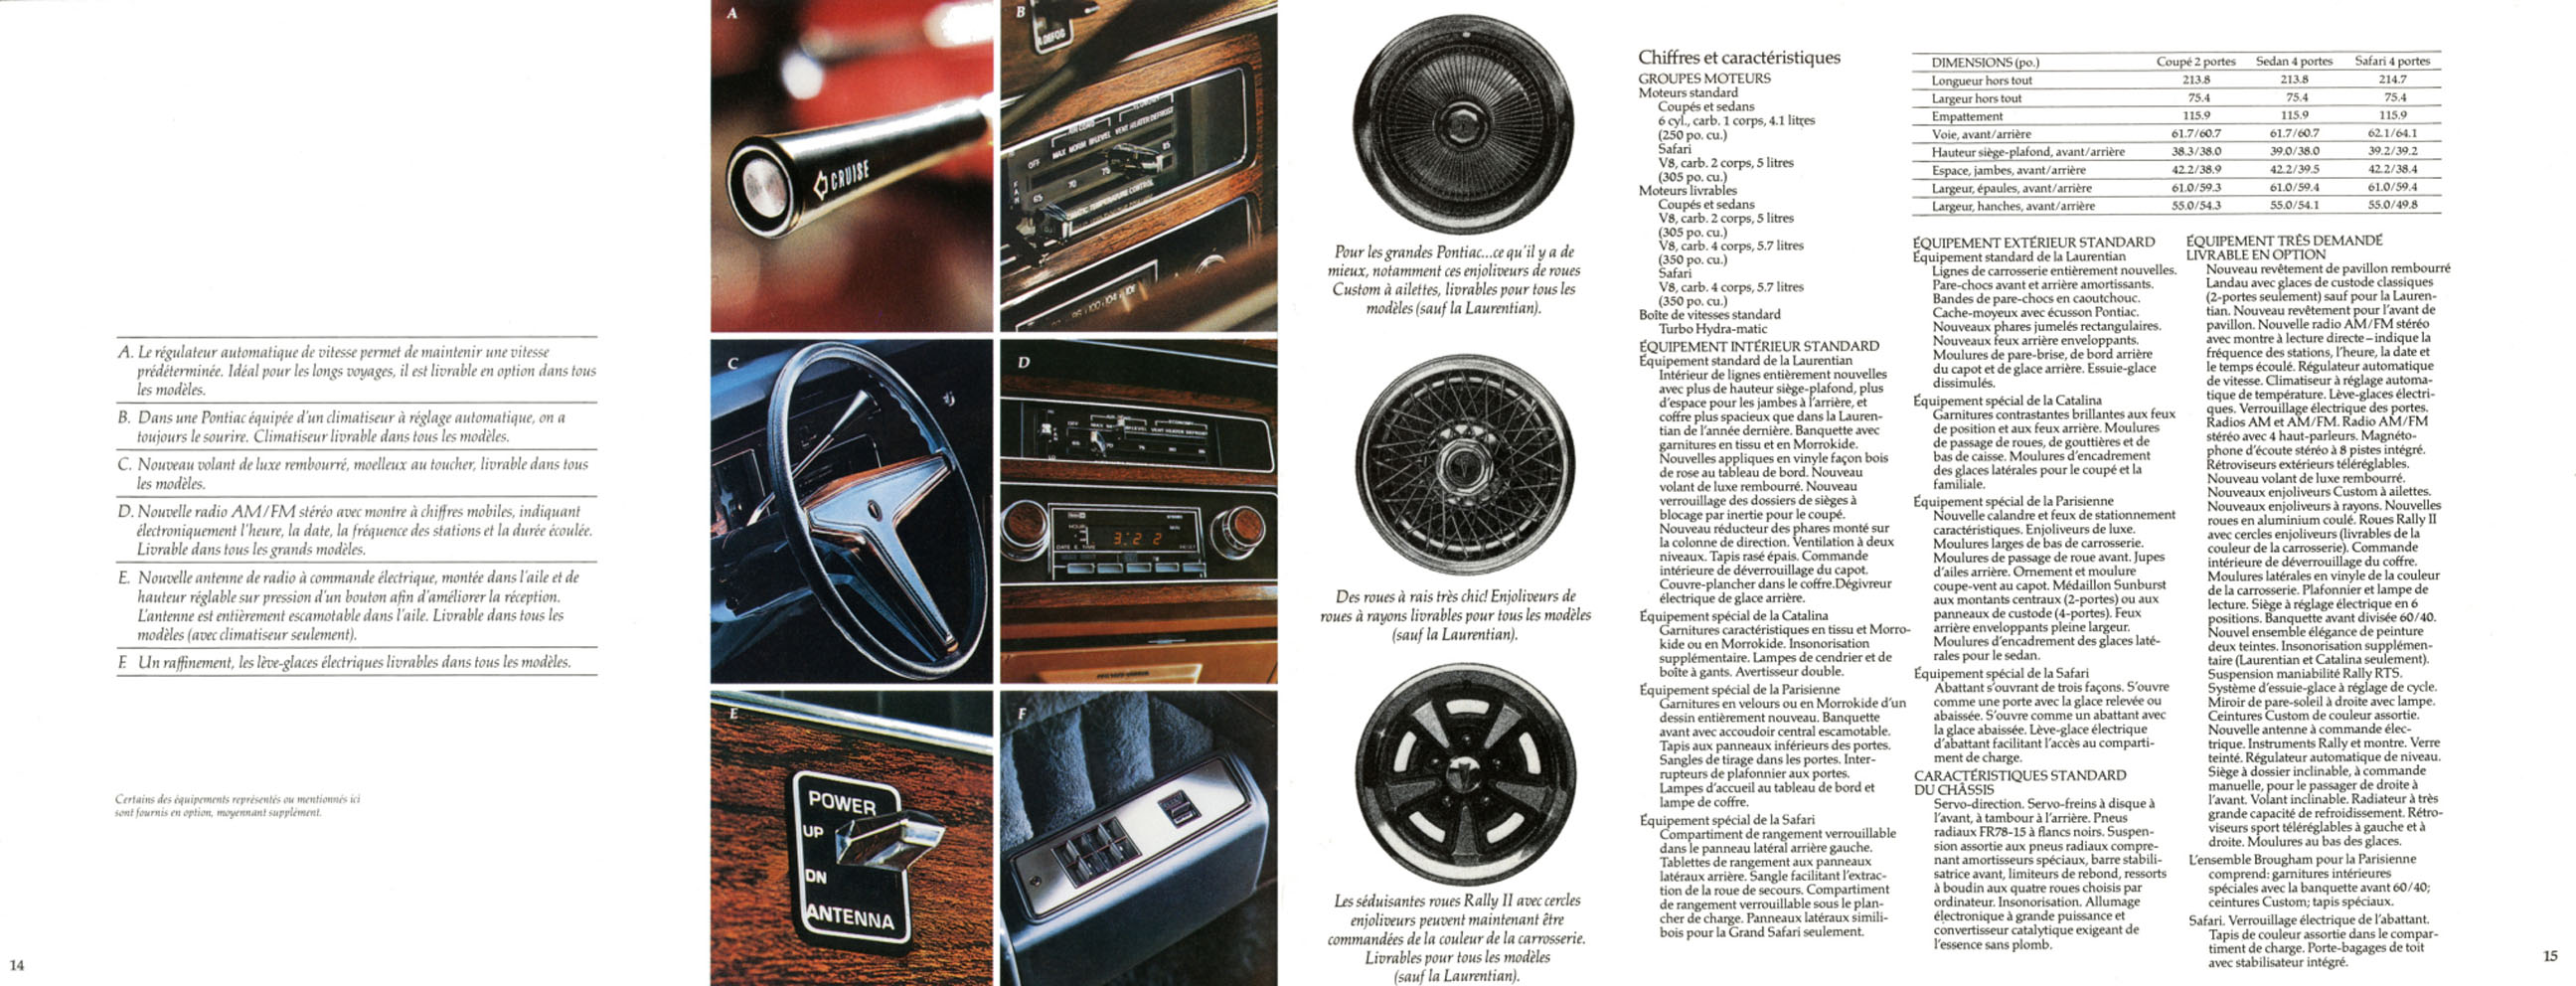 1977_Pontiac_Full_Size_Fr-14-15